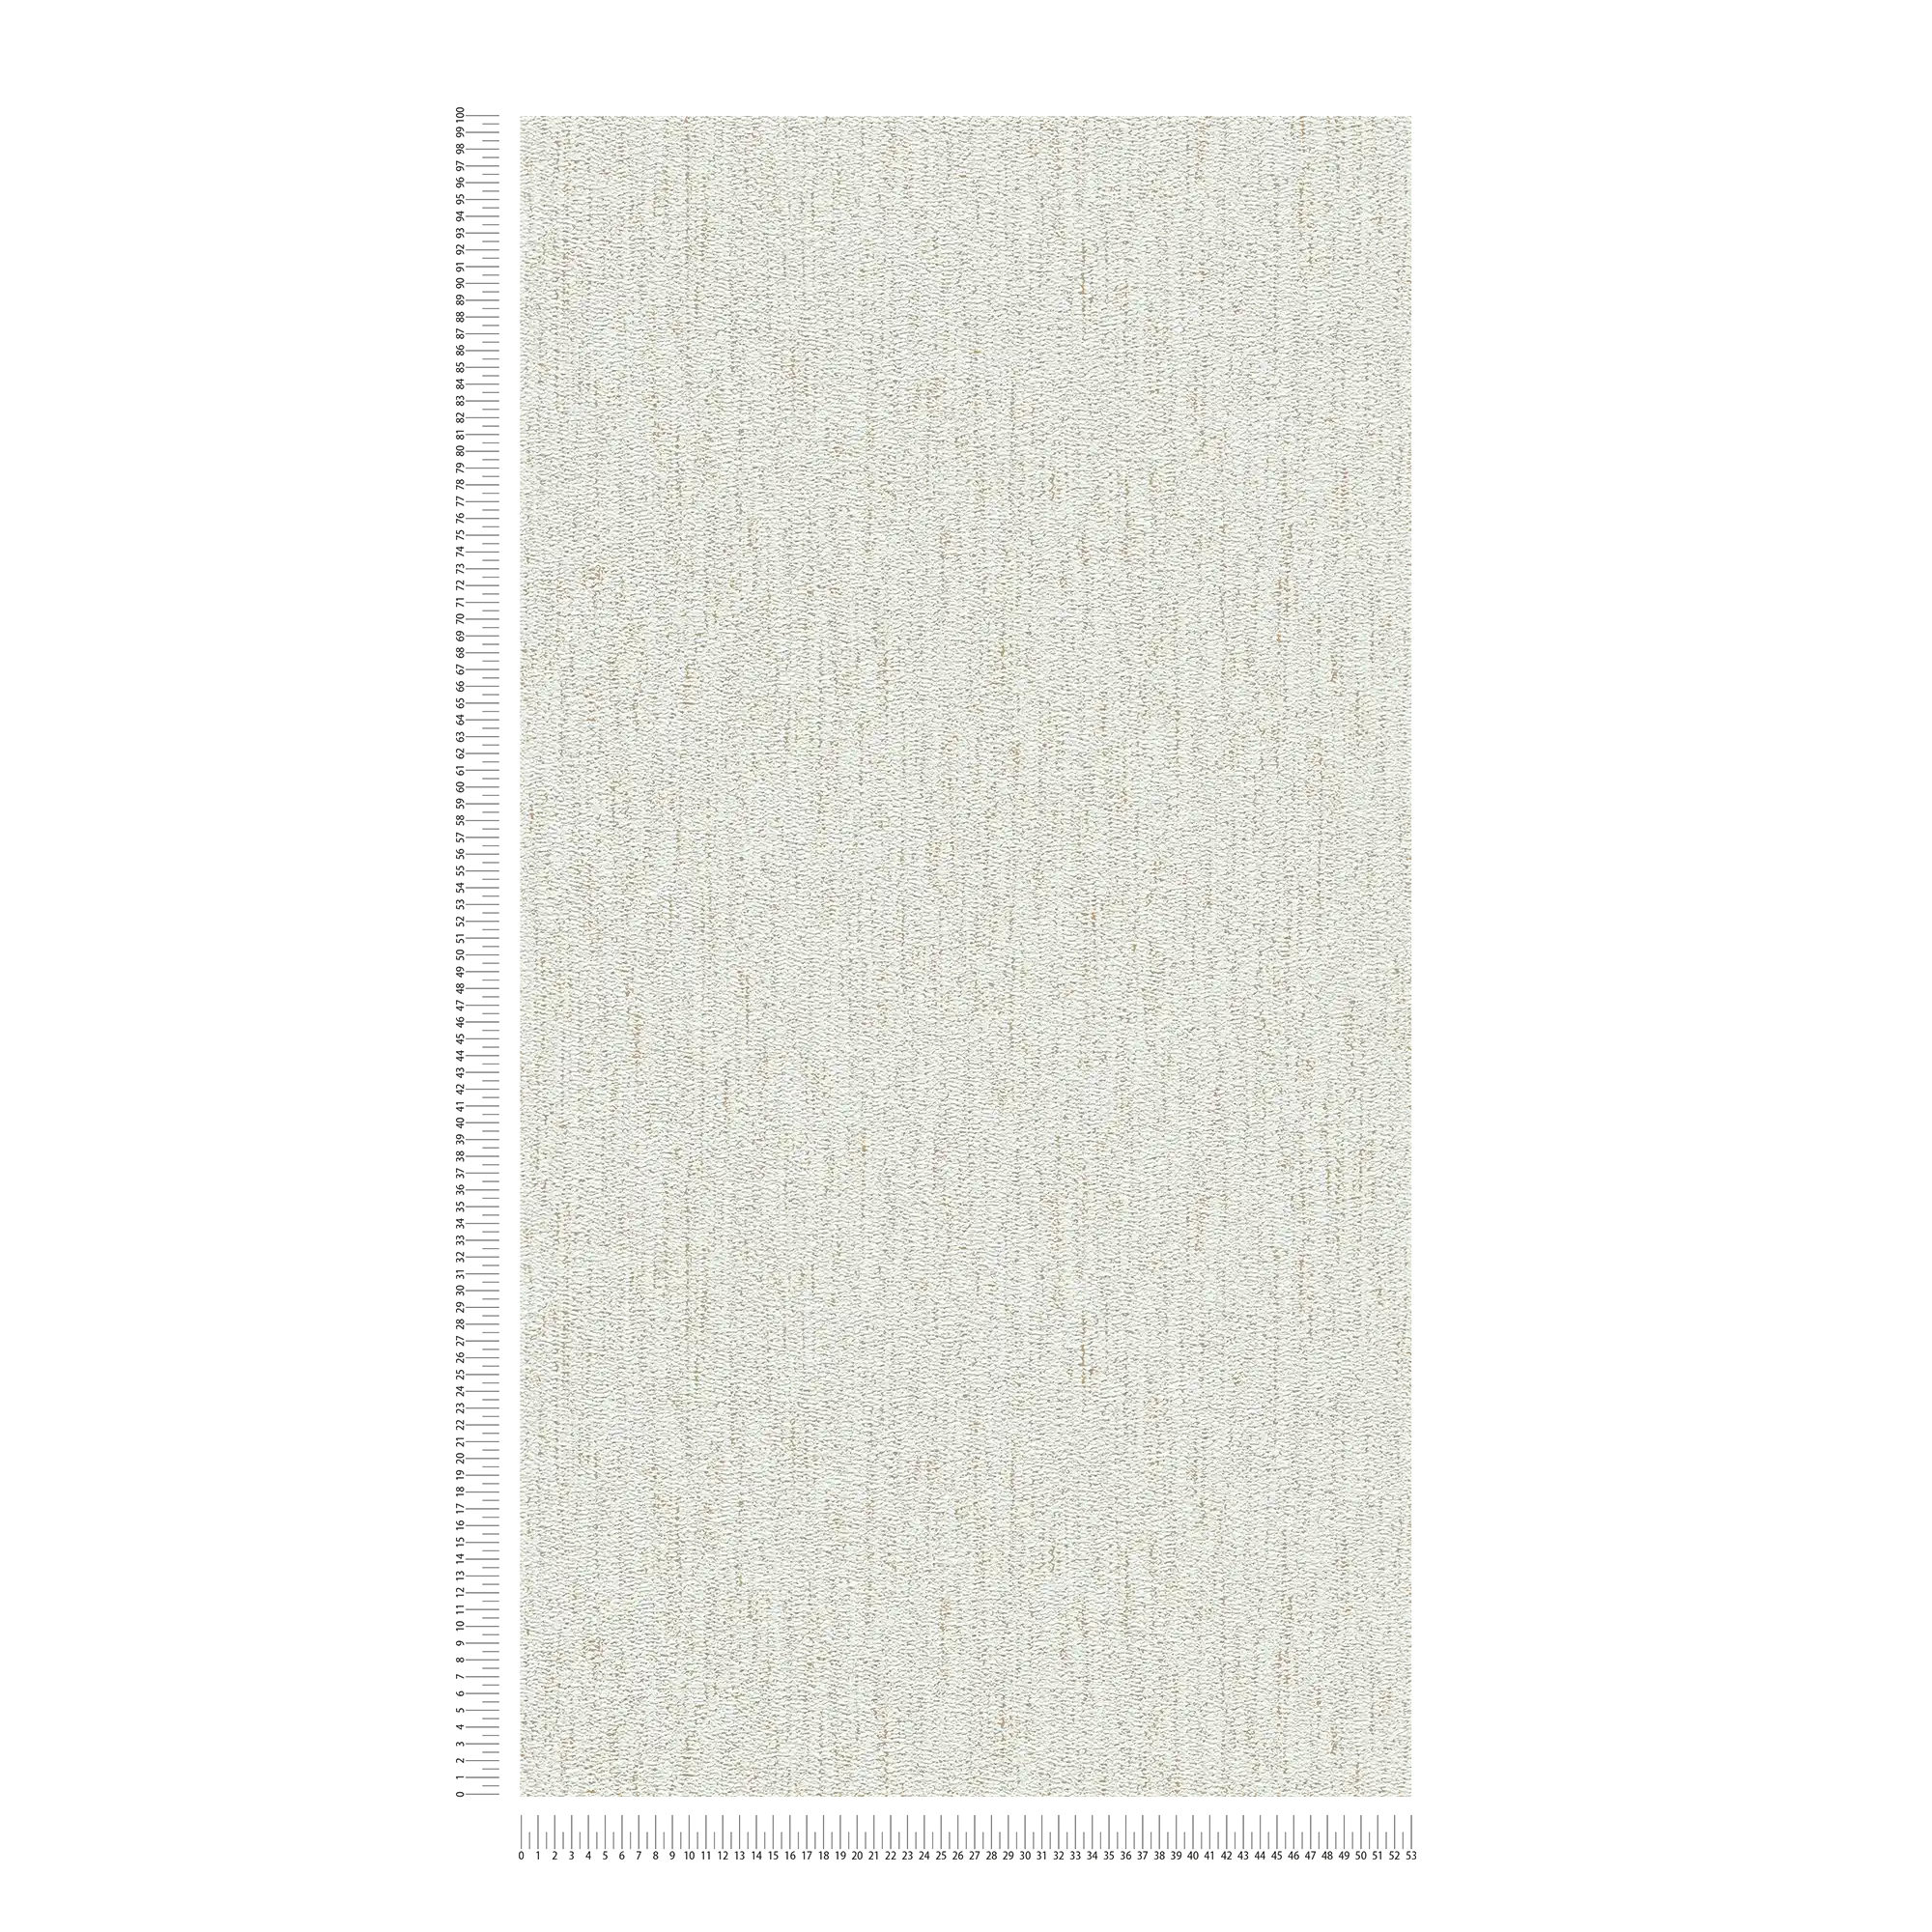             Einfarbige Gewebestruktur mit leichtem Glanz – Weiß, Gold
        